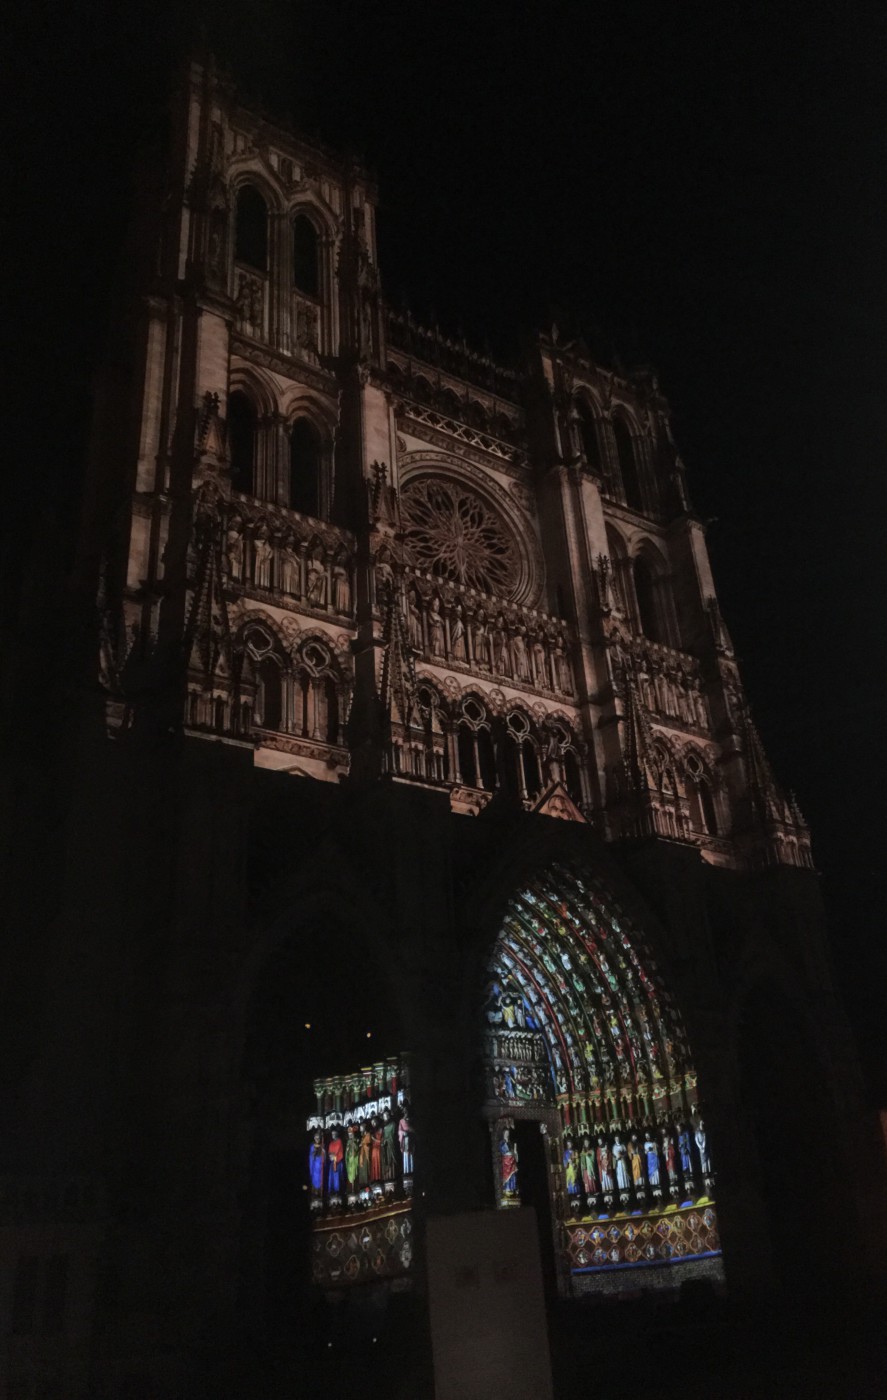 La cathédrale illuminée la nuit.